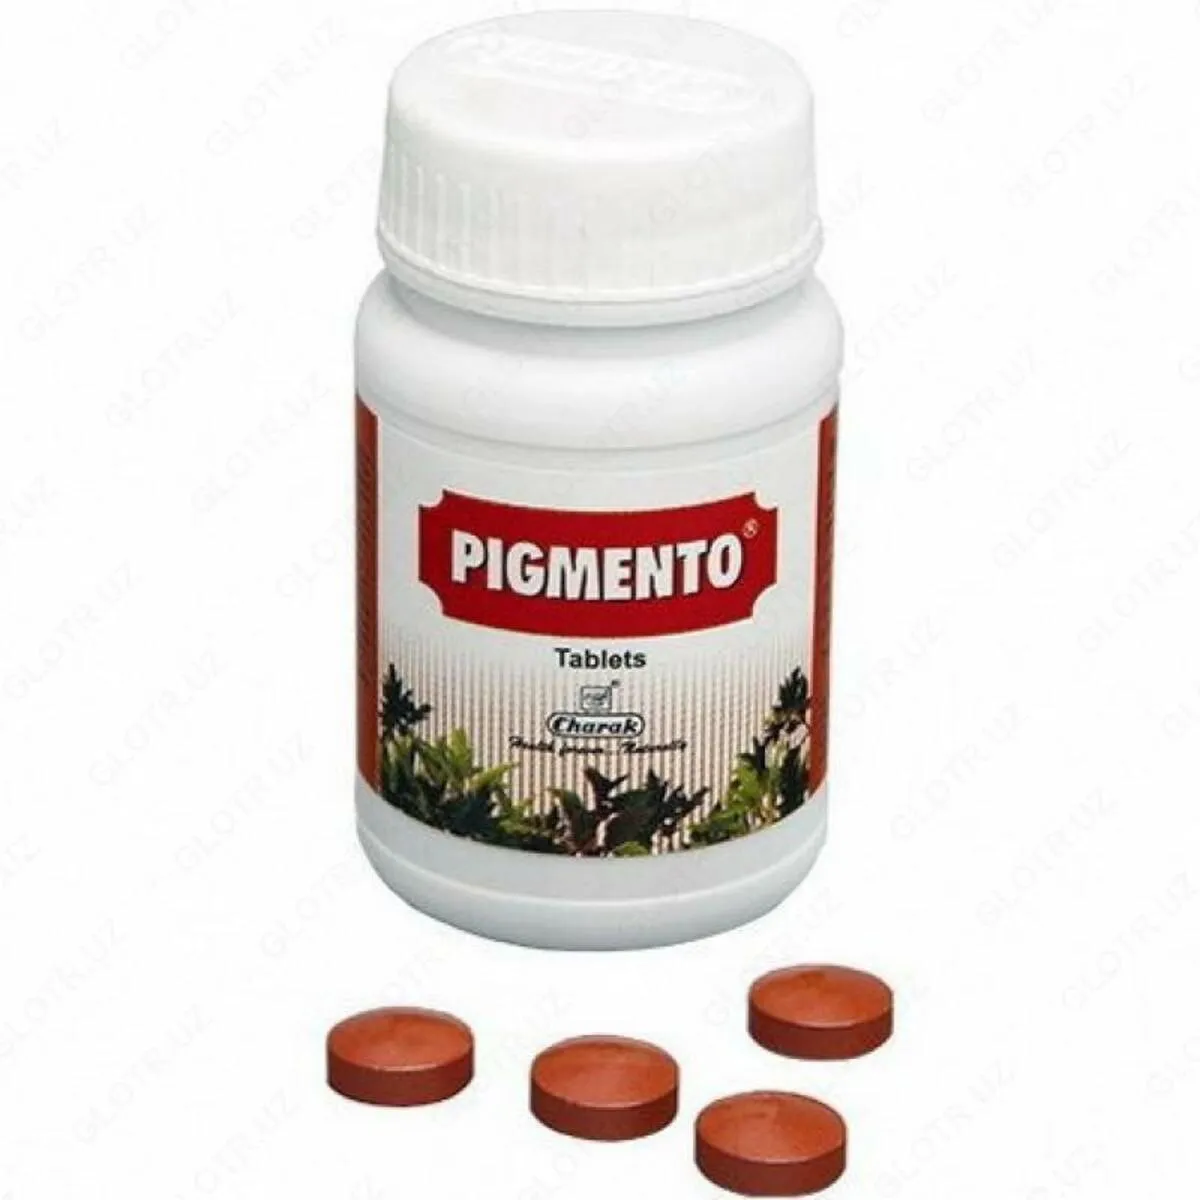 Таблетки от проблем пигментации и витилиго "Пигменто" Pigmento Ointment, 40 штук, Charak. Индия.#1